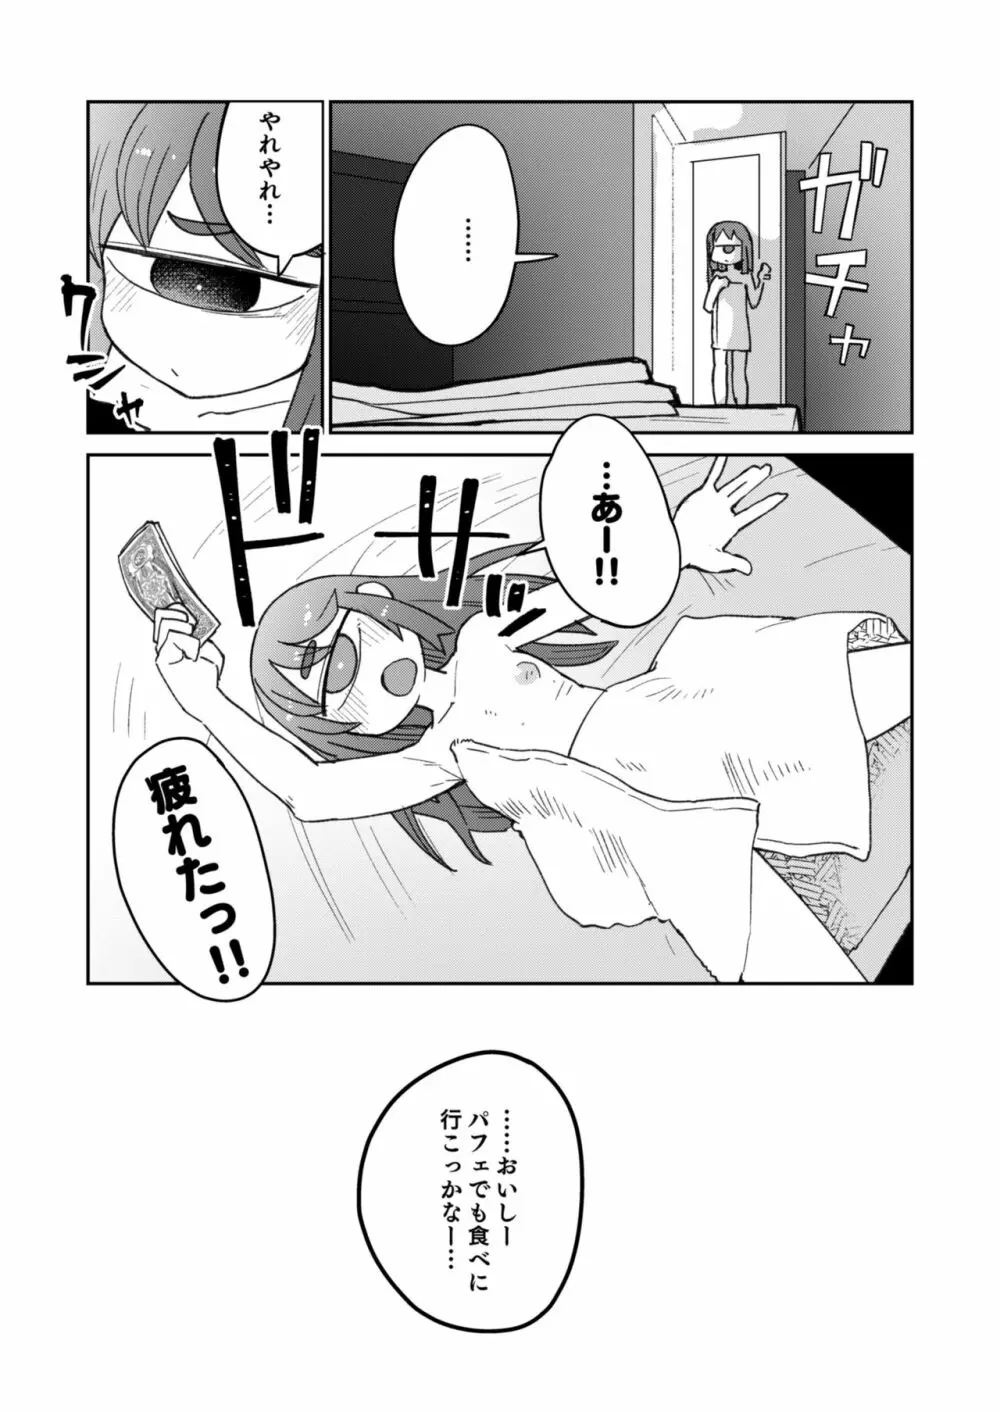 後輩の単眼ちゃん#8 - page21